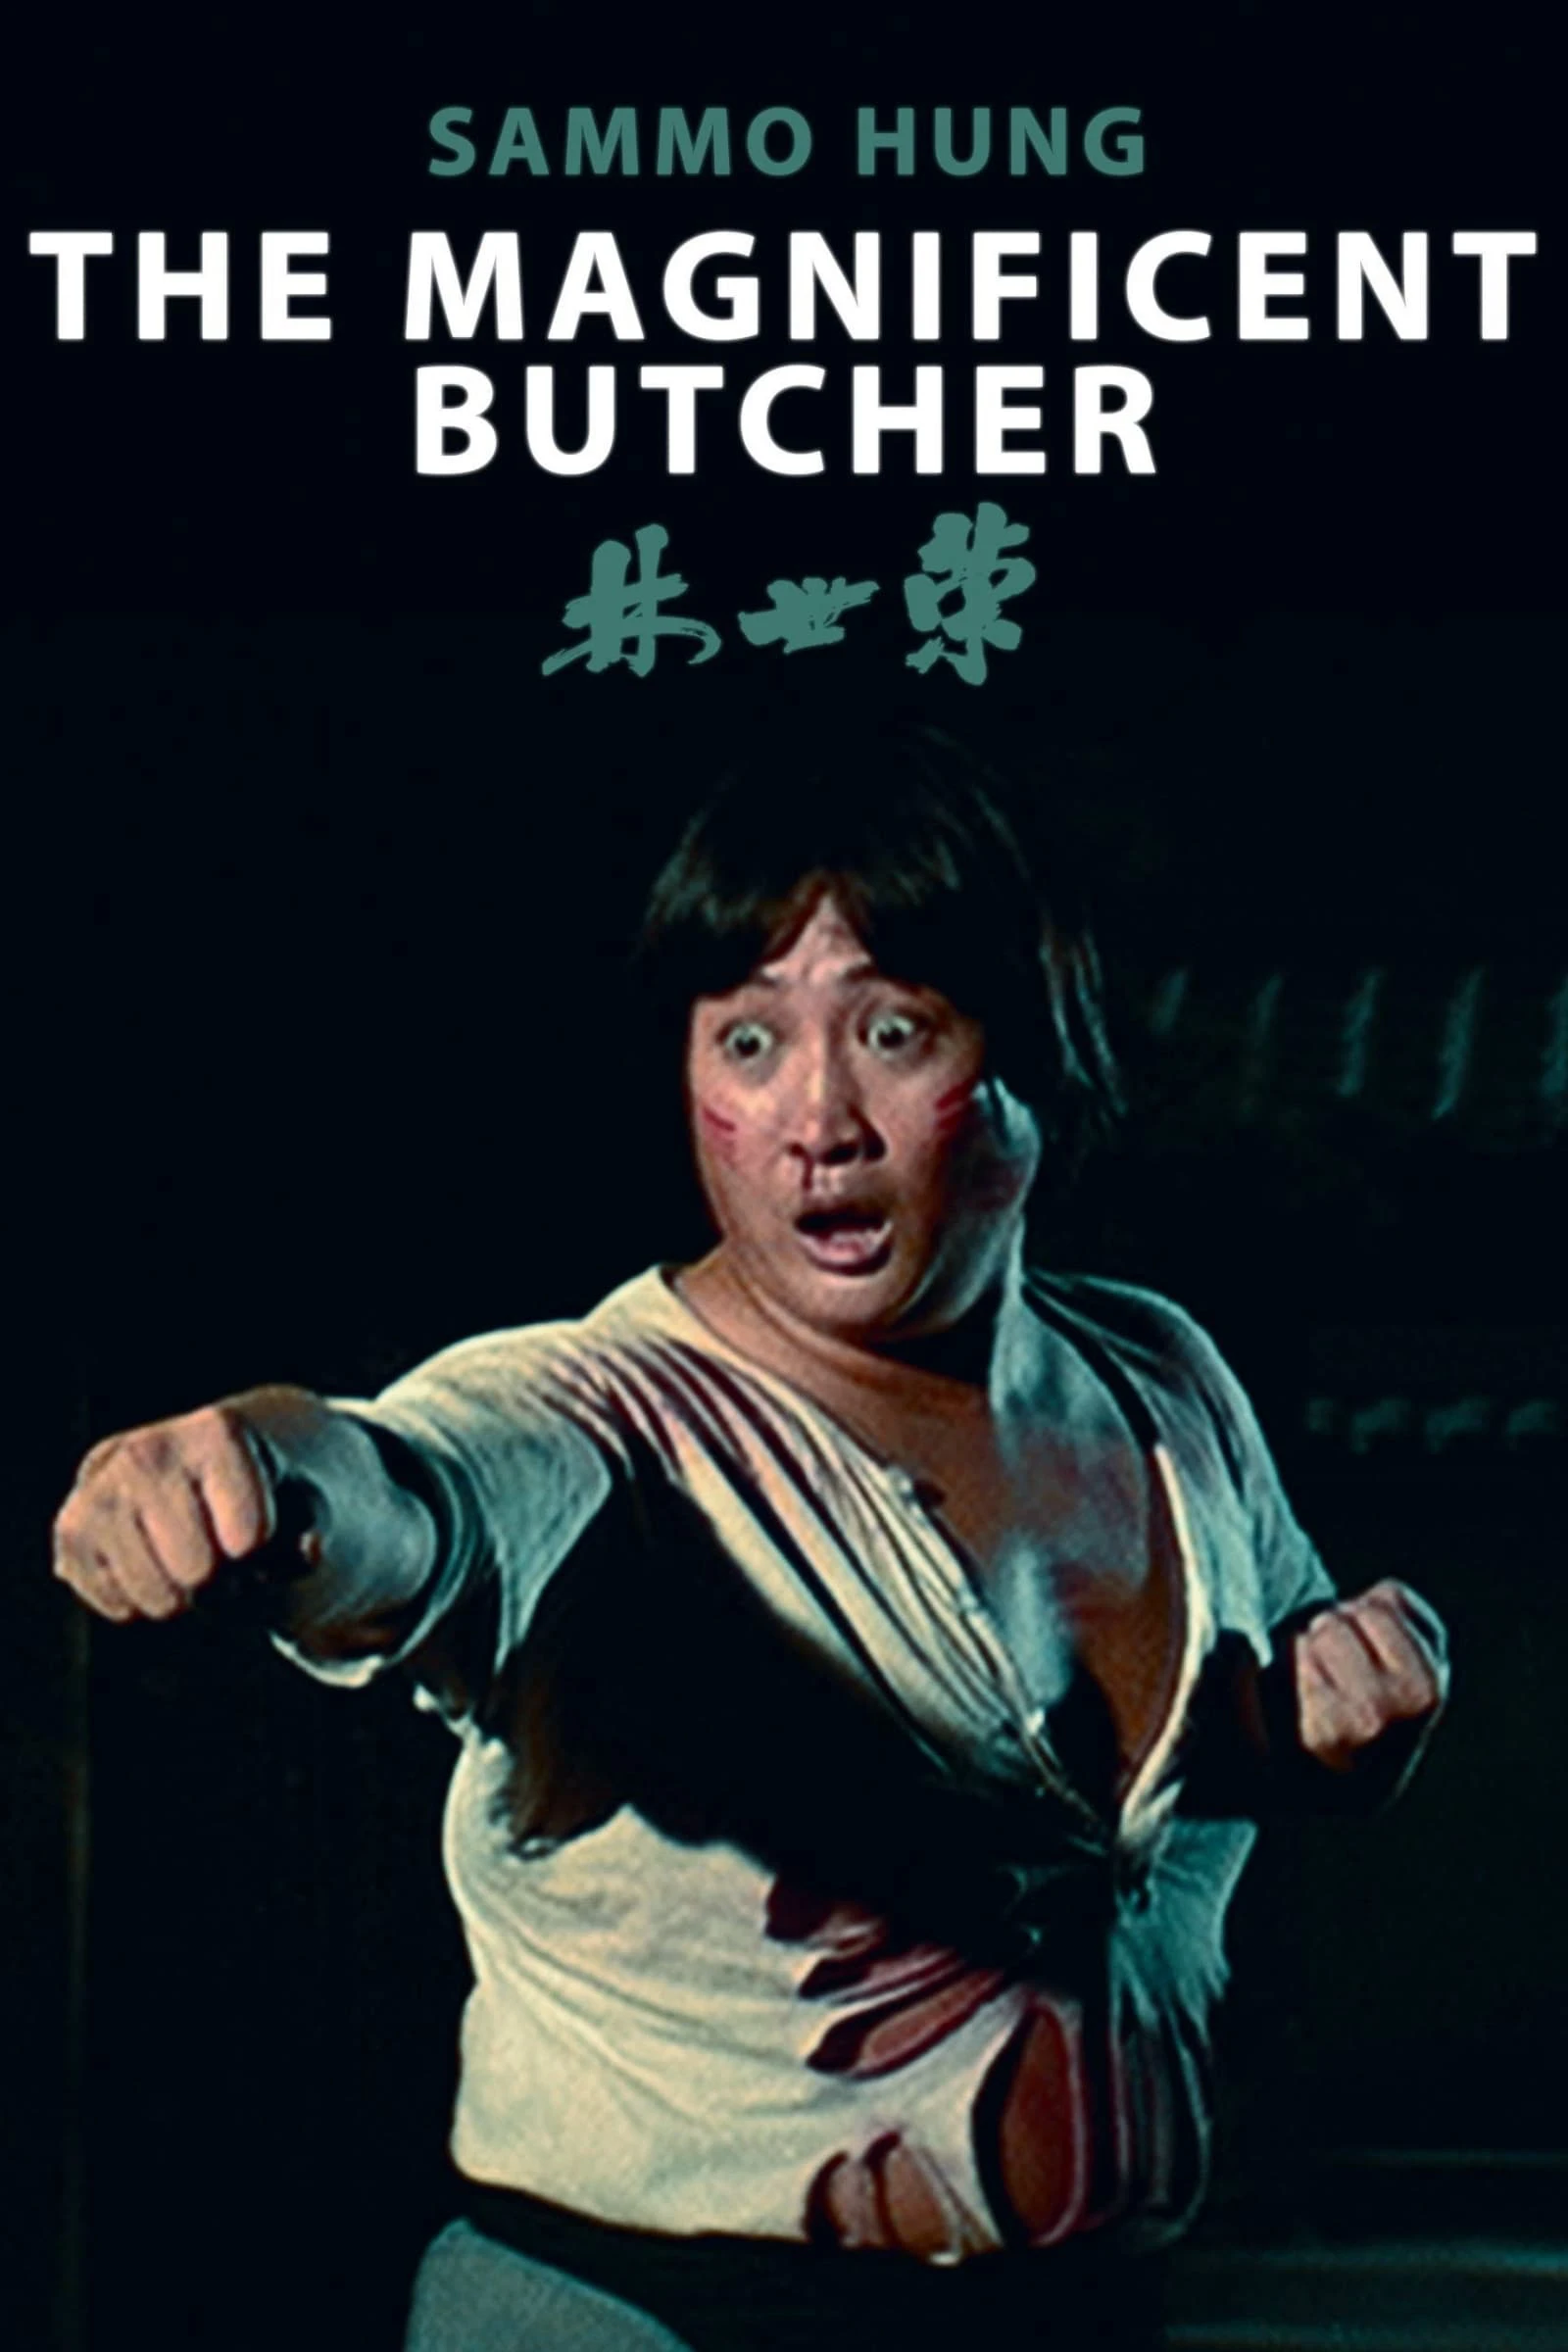 The Magnificent Butcher | The Magnificent Butcher (1979)